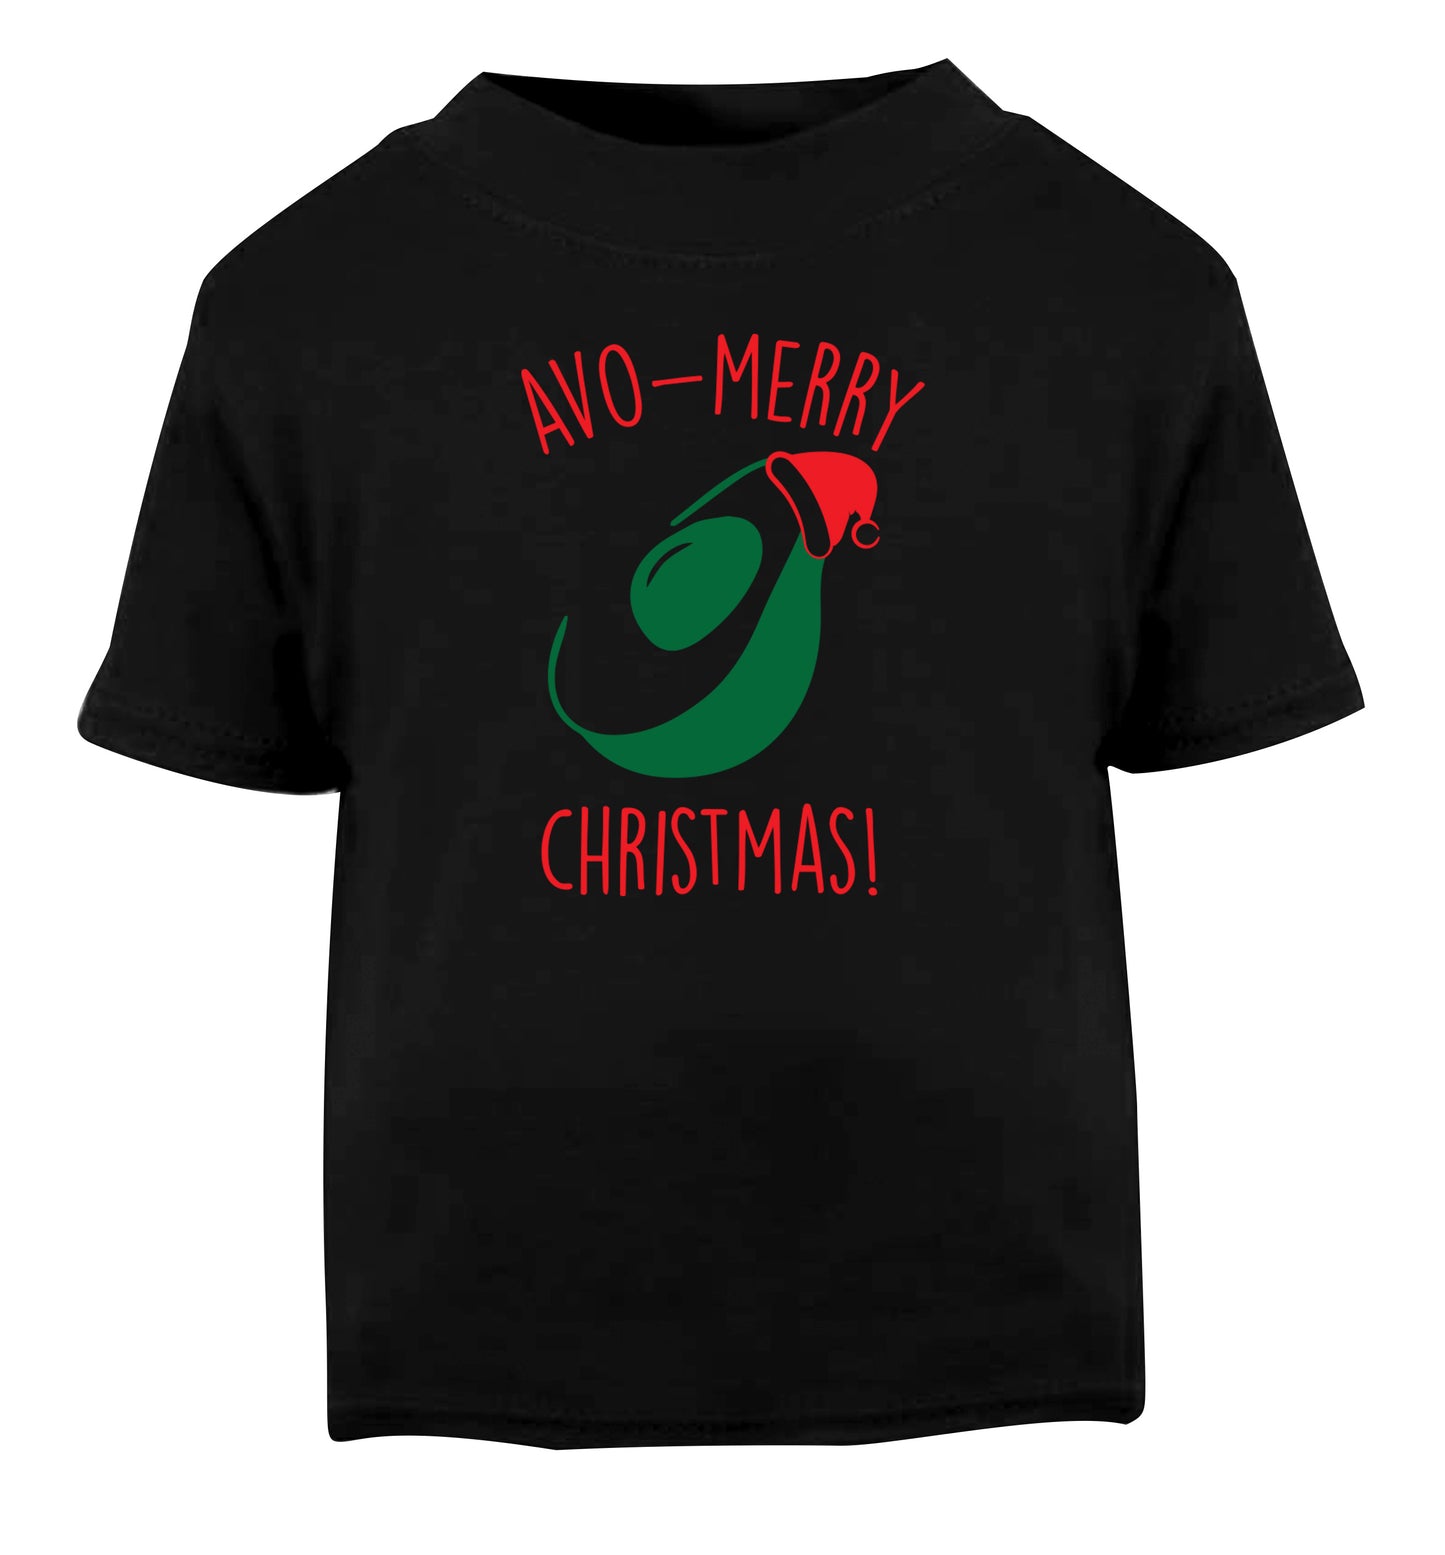 Avo-Merry Christmas Black Baby Toddler Tshirt 2 years